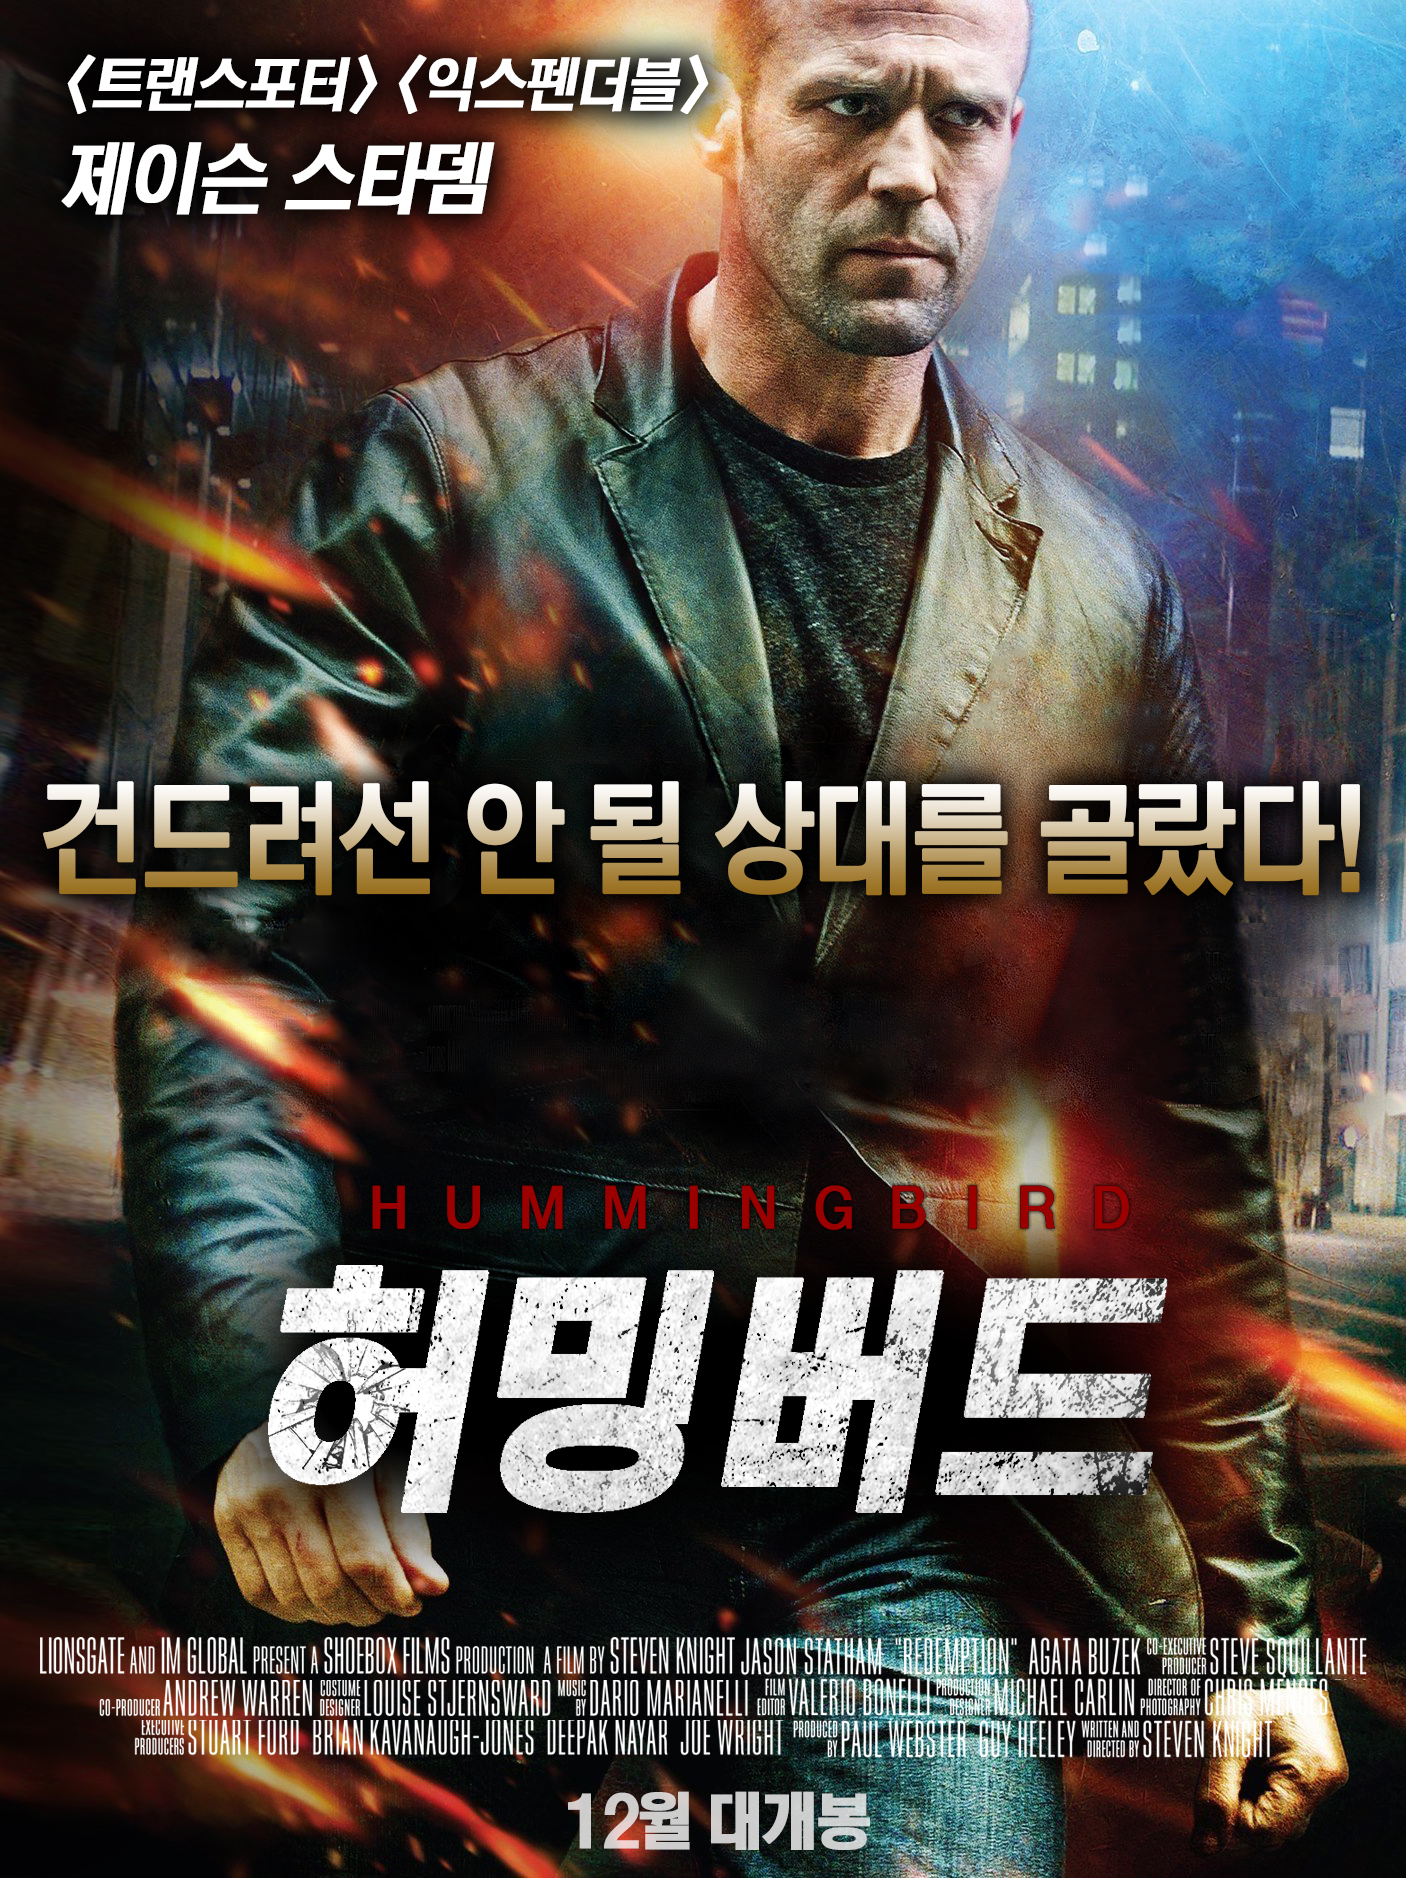 허밍버드 (2013) 다시보기 튜브박스365 드라마, 예능, 오락, 시사, 애니, 영화 다시보기